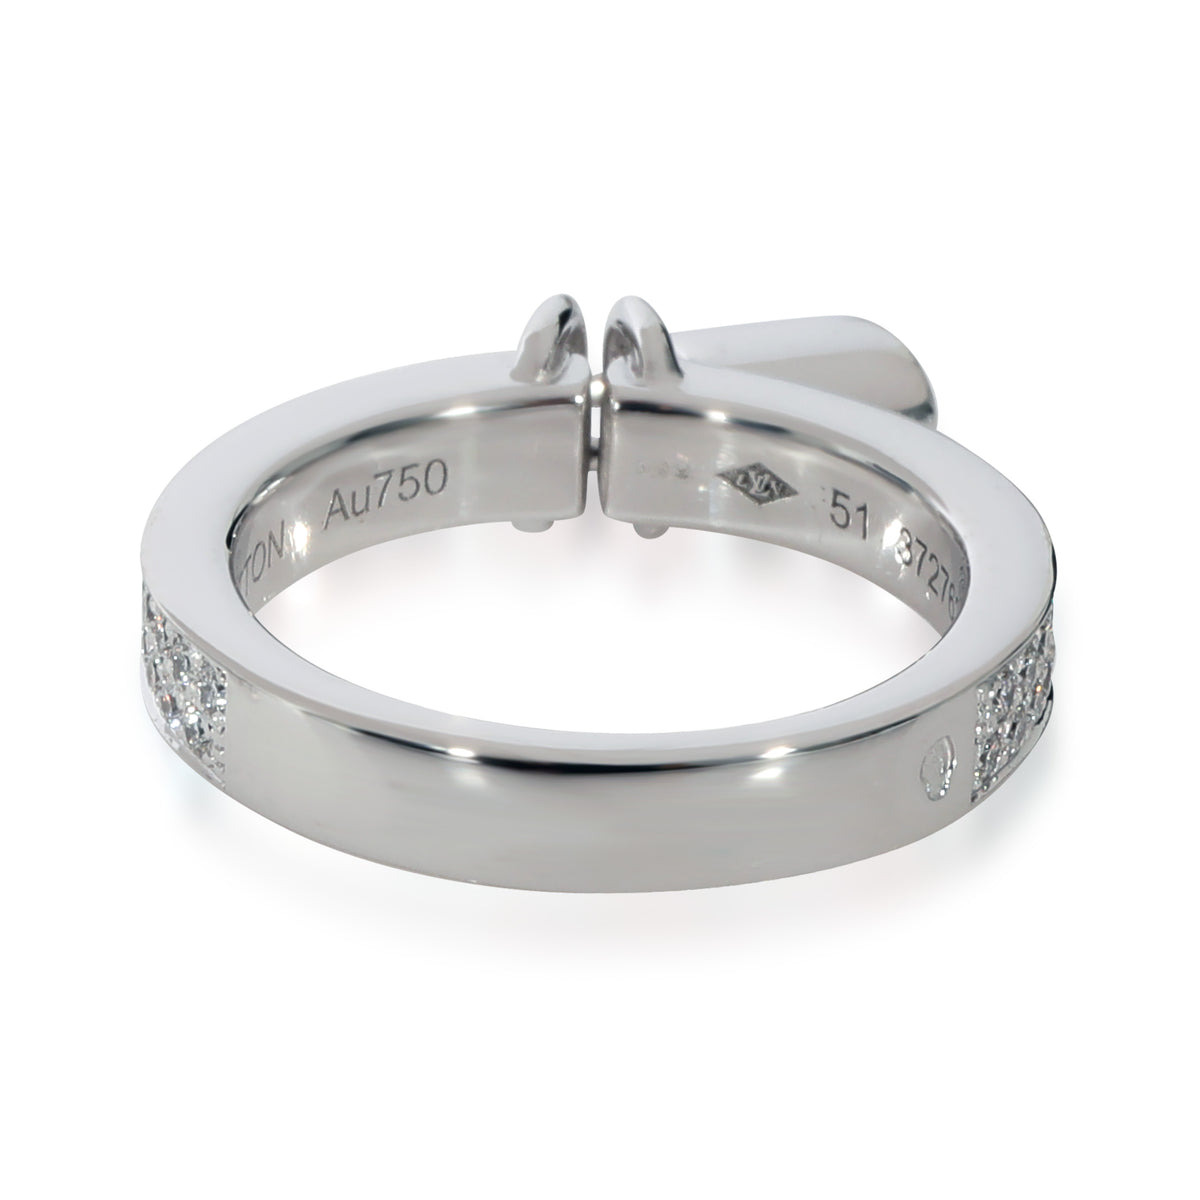 Louis Vuitton Lockit Ring in 18k White Gold 0.40 CTW